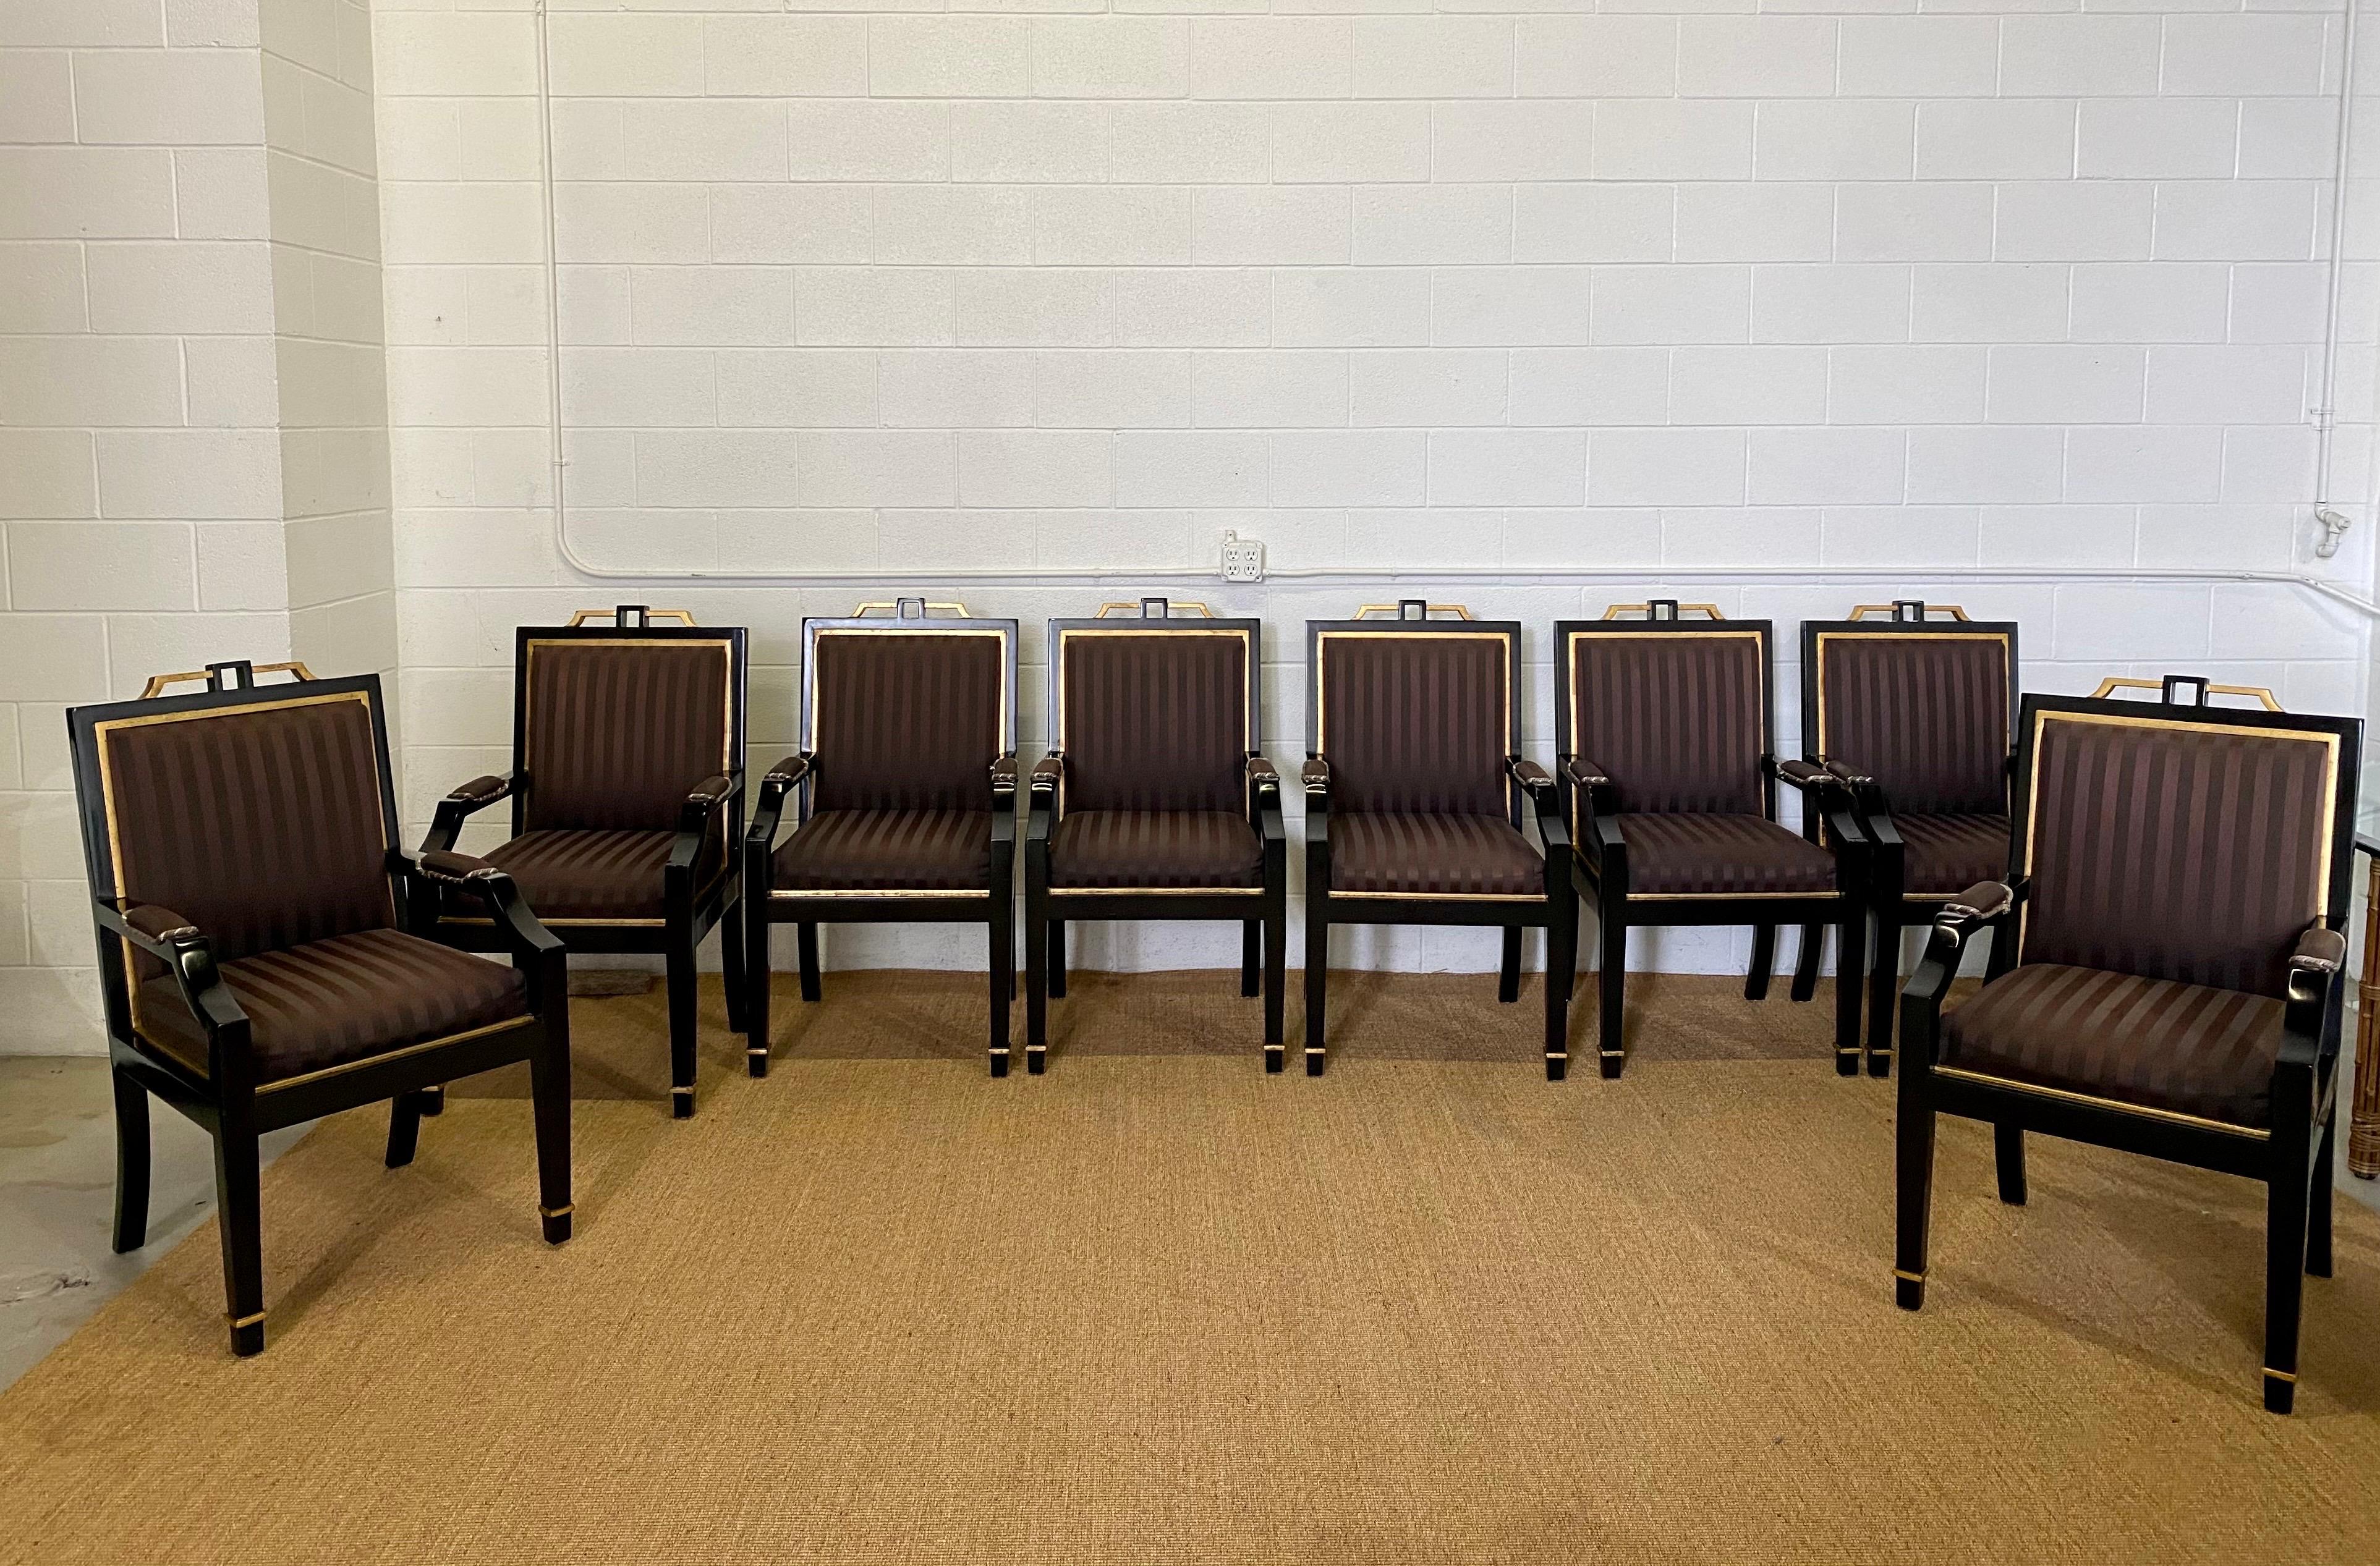 Wir freuen uns sehr, ein königliches Set von sechs Esszimmerstühlen aus den 1980er Jahren anbieten zu können. Die quadratische Rückenlehne der Stühle zeichnet sich durch eine elegante Geometrie und klare Linien aus, die einen Hauch von Eleganz und